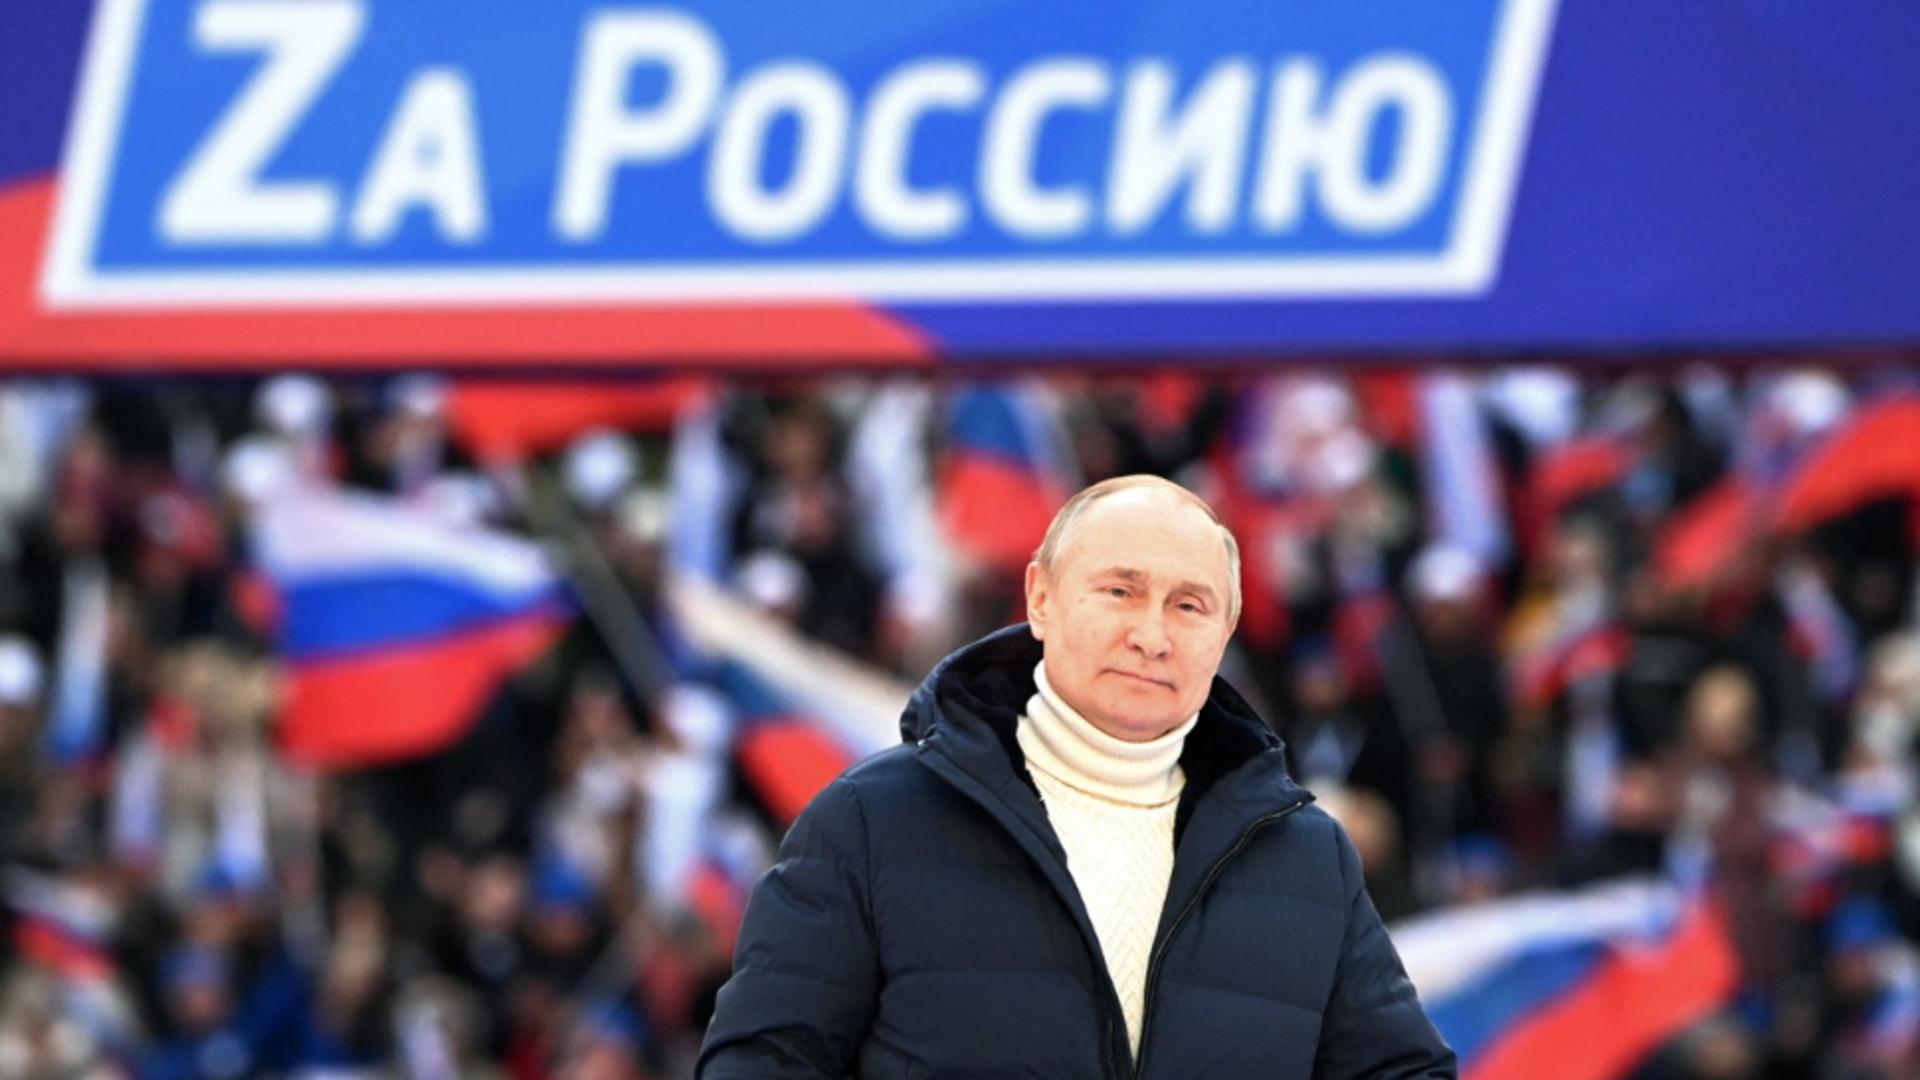 Portretul psihologic al lui Putin care naște îngrijorare la cel mai înalt nivel / Foto: Profi Media